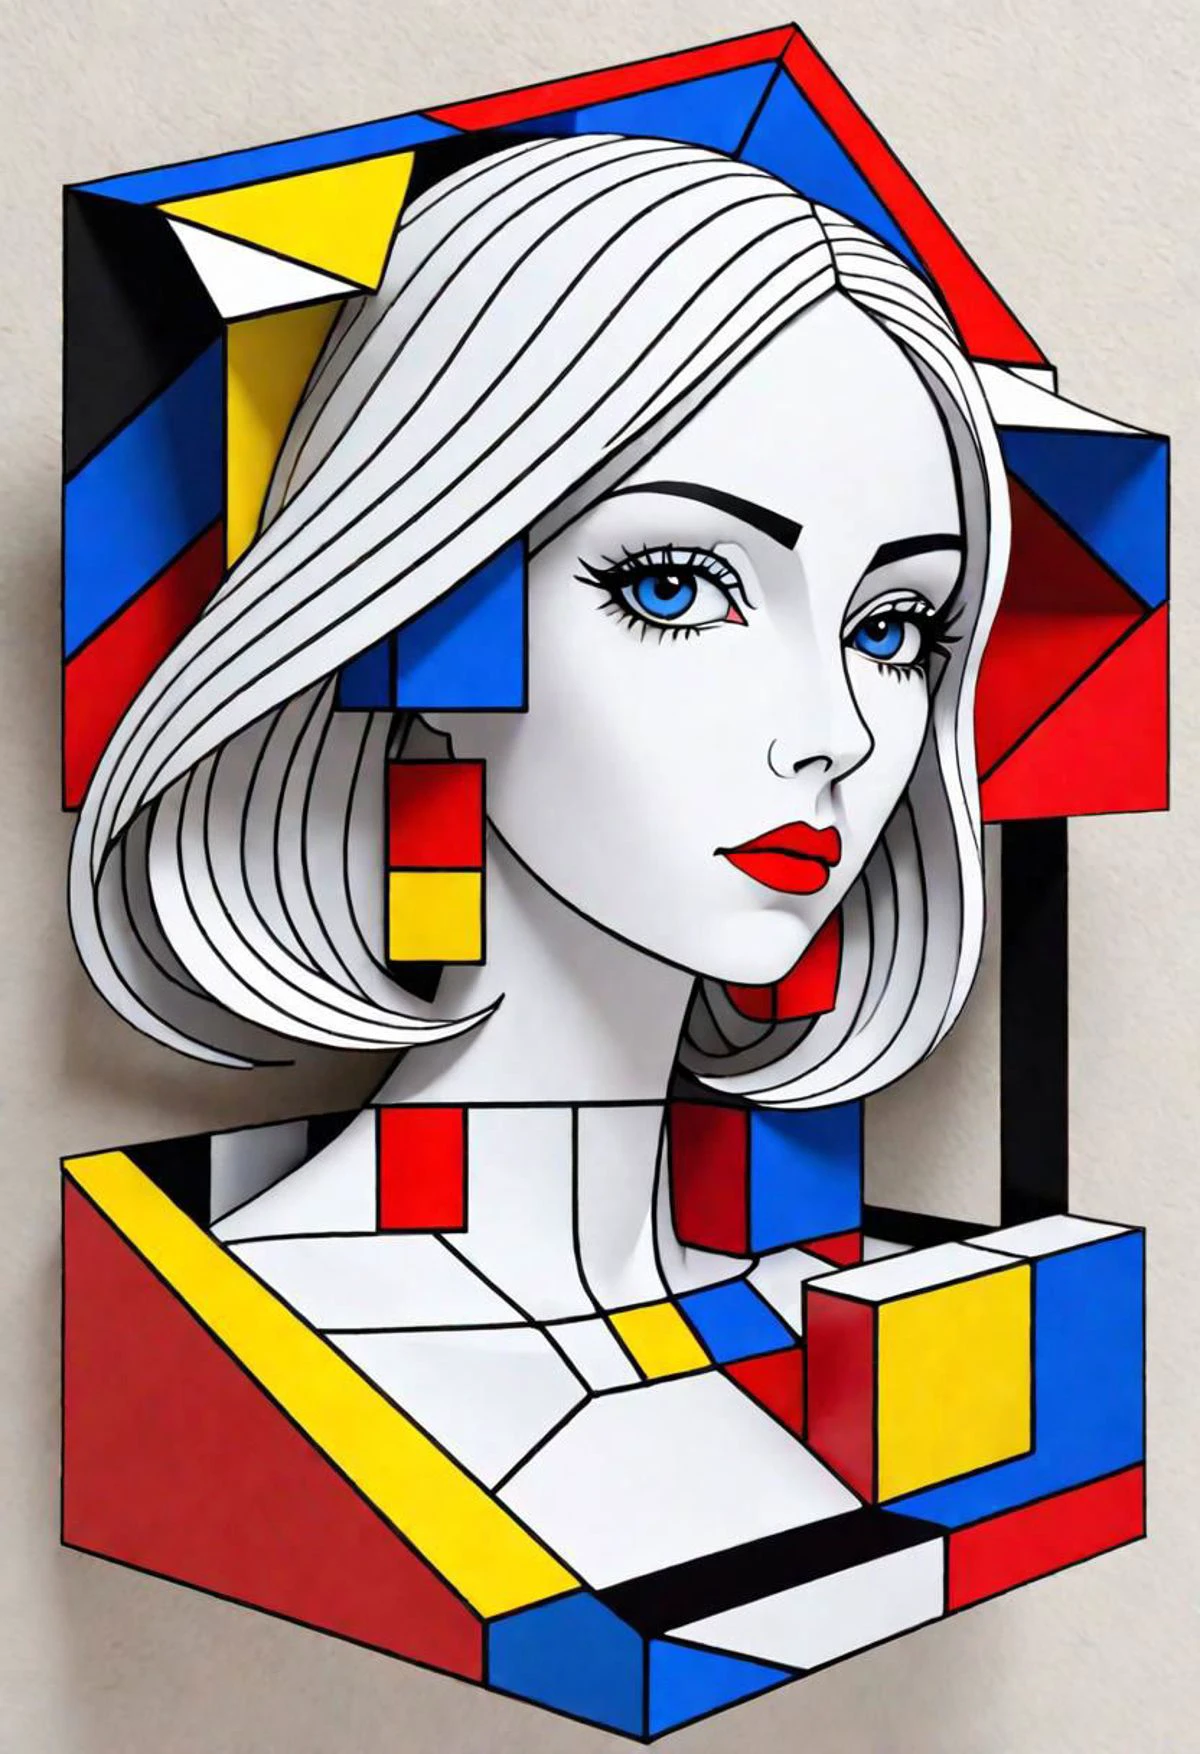 3d, รูปทรงเรขาคณิตที่เป็นไปไม่ได้, ผู้หญิงของกระดาษ, ซ้อนกัน, สง่างาม, กลมกลืน, ดีและสวยงาม, สีที่ได้แรงบันดาลใจจาก Mondrian, วาซาเรลี